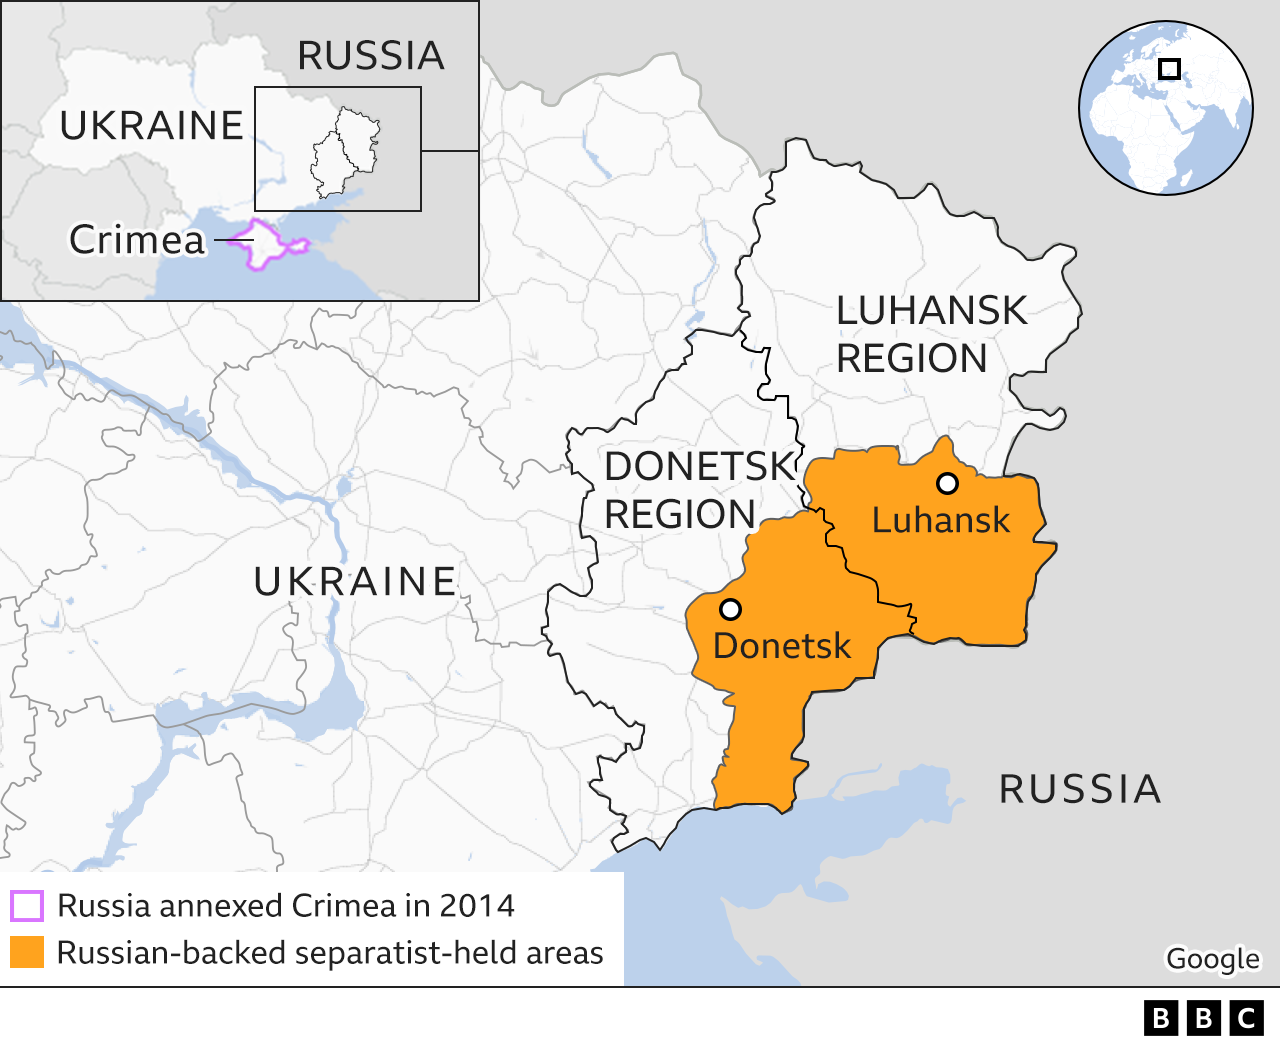 Χάρτης που δείχνει τις περιοχές του Ντόνετσκ και του Λουχάνσκ στην ανατολική Ουκρανία και τις υποστηριζόμενες από τη Ρωσία περιοχές που ελέγχονται από τους αυτονομιστές σε αυτές τις περιοχές.